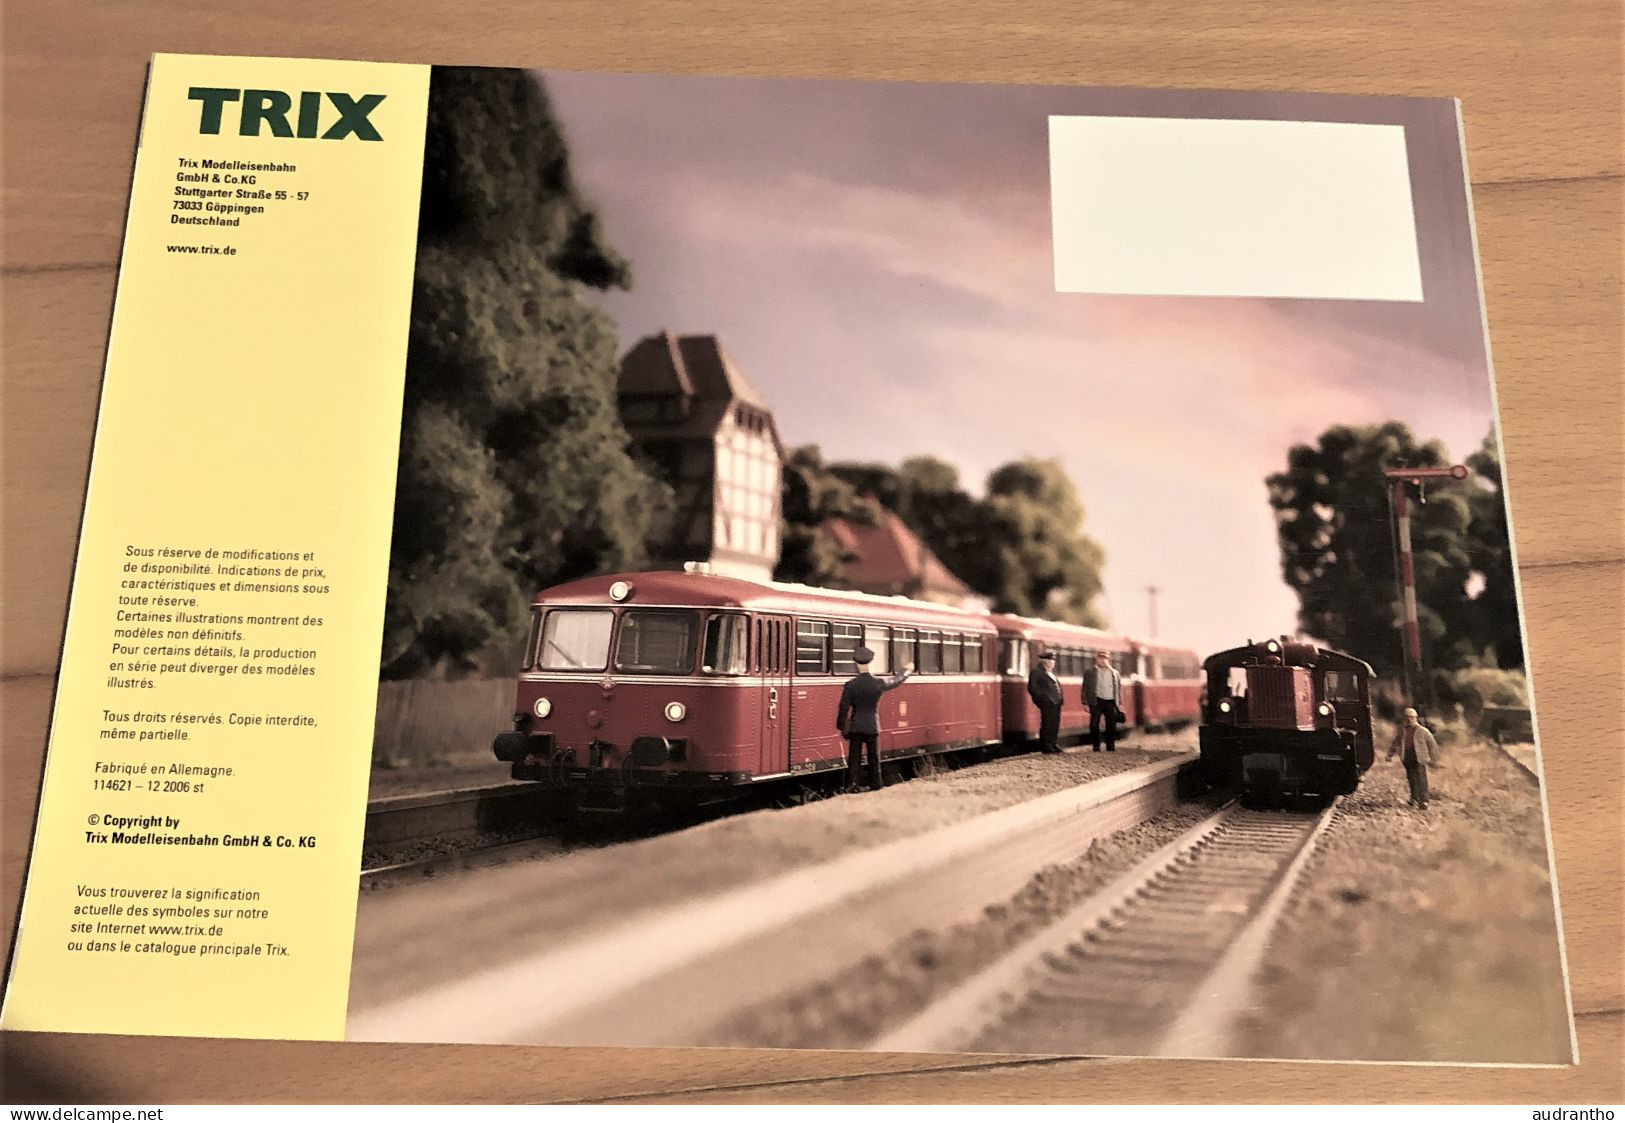 Catalogue TRIX Nouveautés 2007 Modélisme Trains - French